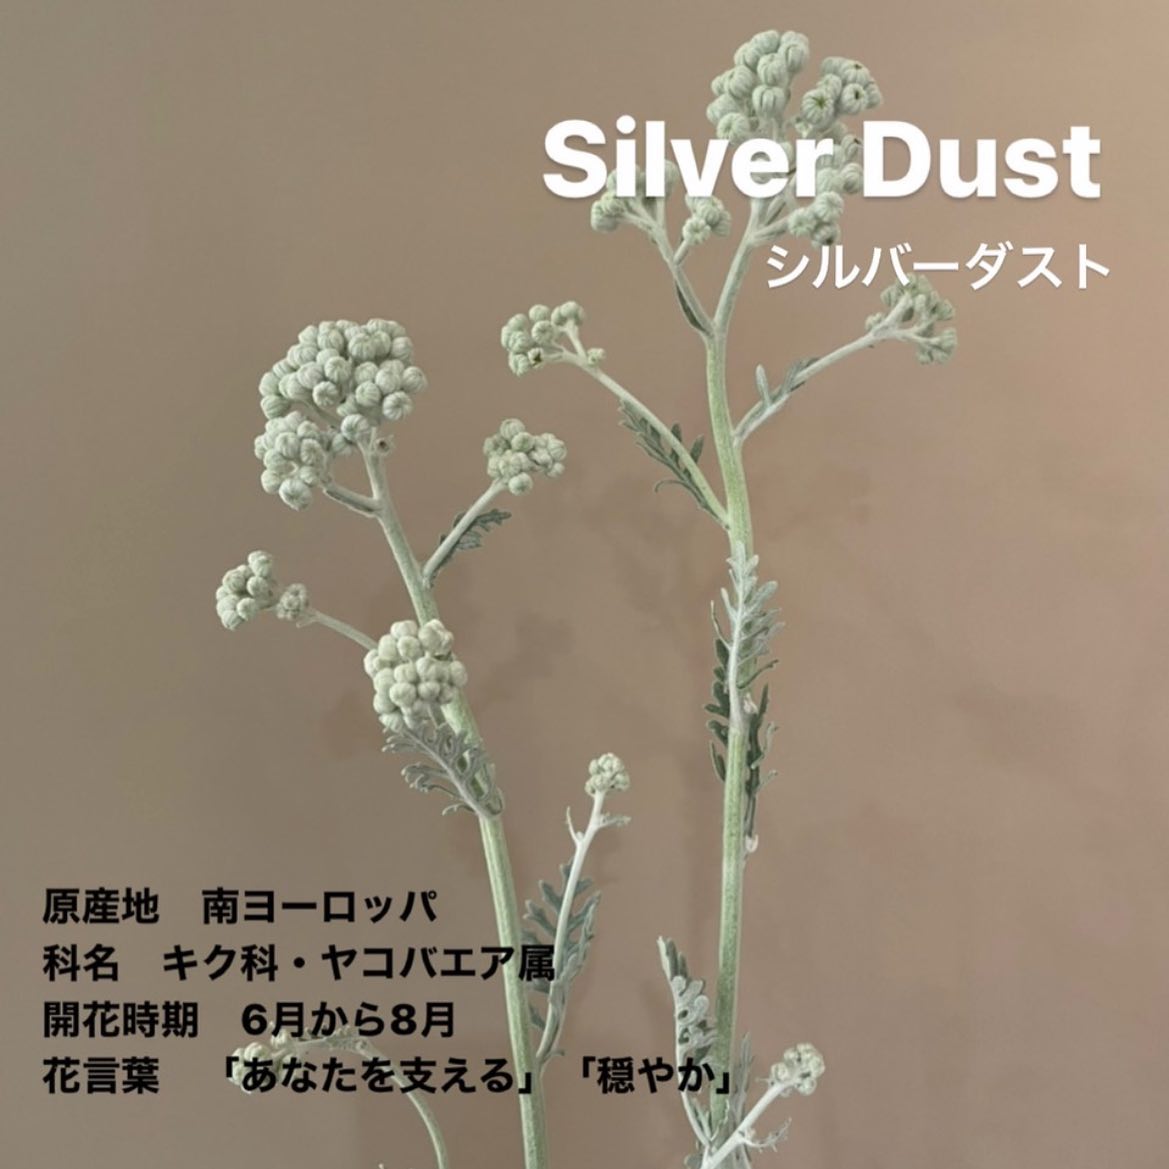 モンソーフルール新宿アルタ店です。
.

Silver Dust
シルバーダスト

原産地　南ヨーロッパ
科名　キク科・ヤコバエア属
開花時期　6月から8月
花言葉　「あなたを支える」 「穏やか」